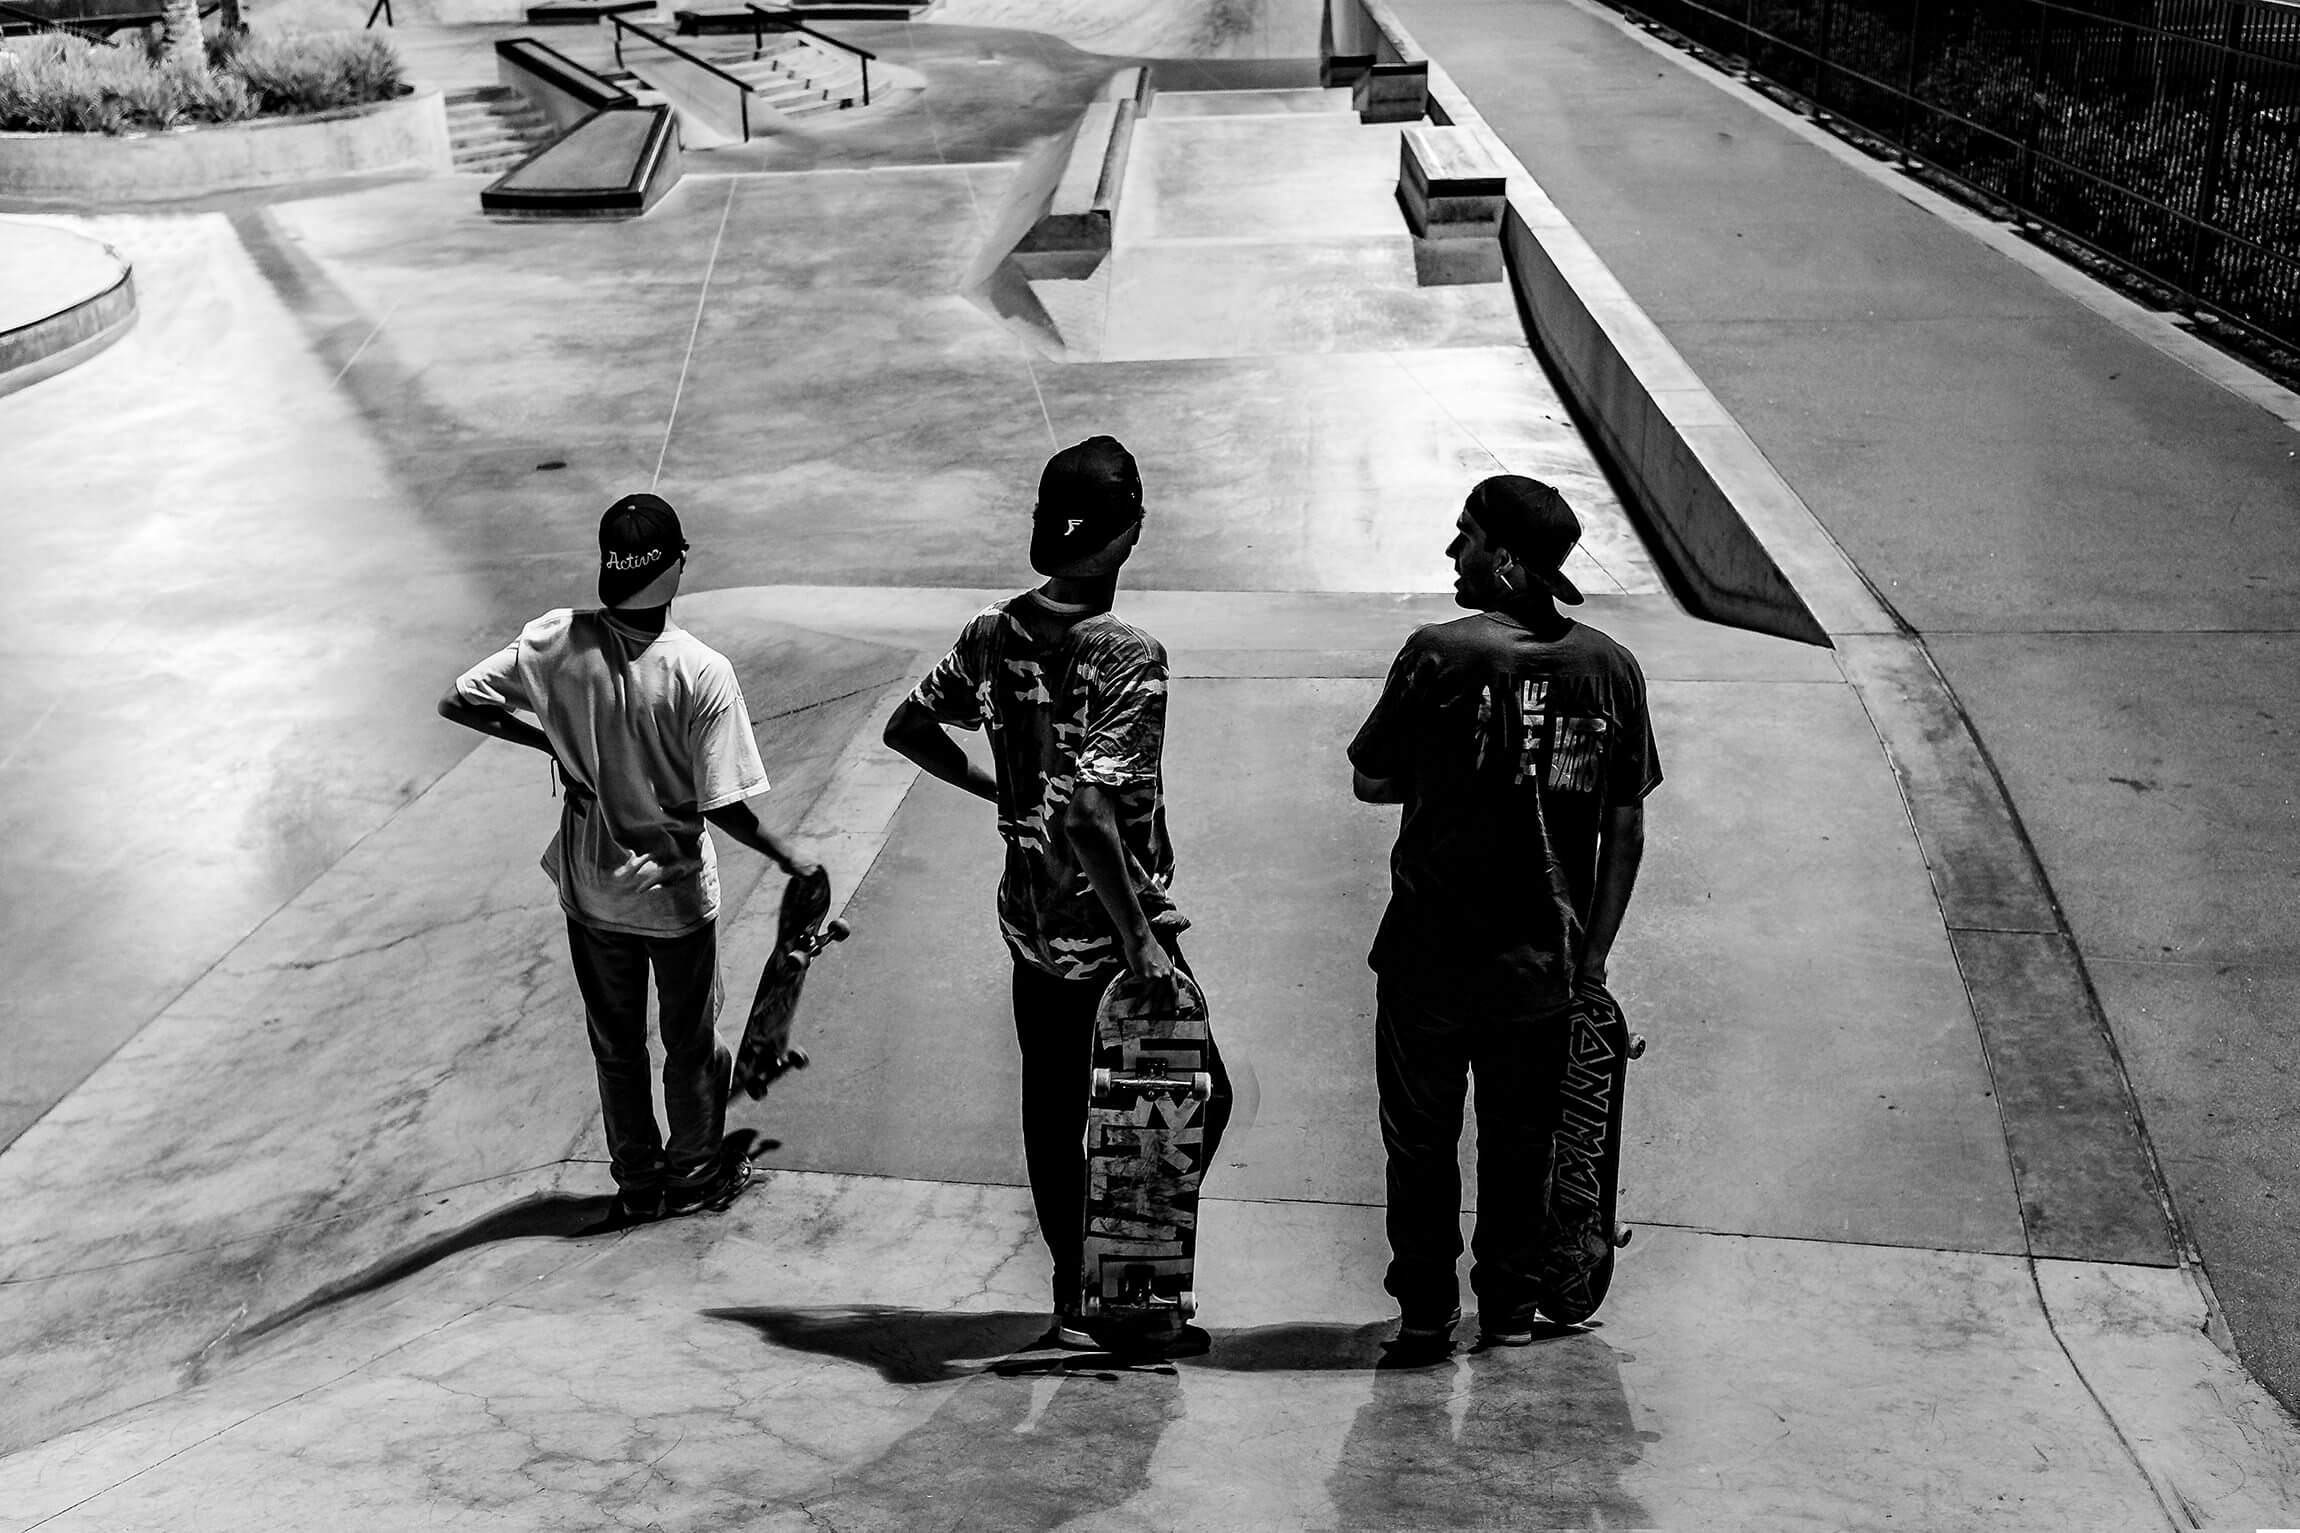 Silhouette of Skateboarders at Skatepark